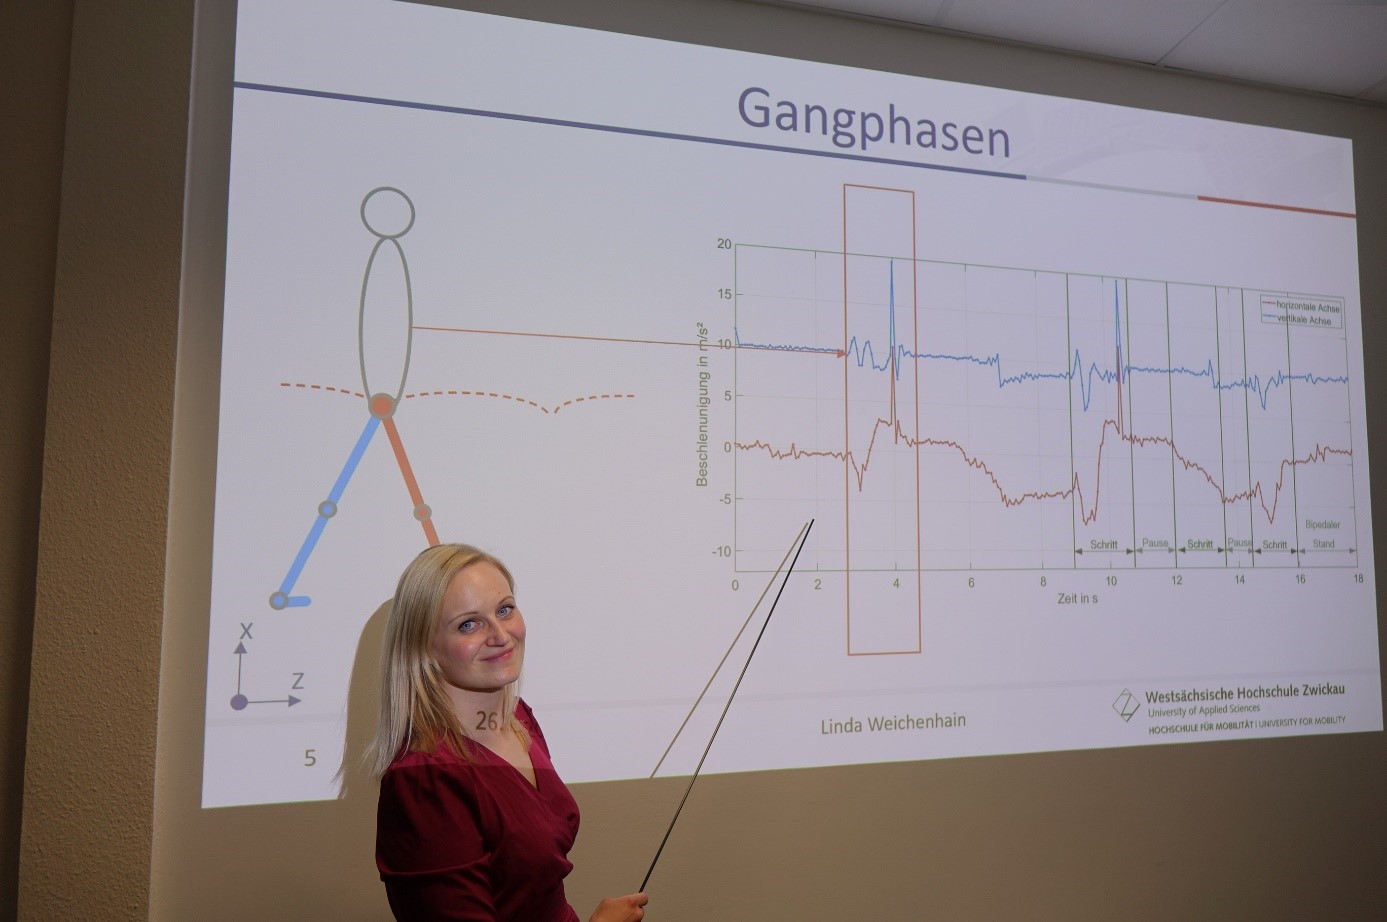 Foto: Eine junge Frau steht mit einem Zeigestock in der Hand vor einer Projektion, auf der ein Diagramm mit der Überschrift Gangphasen zu sehen ist 